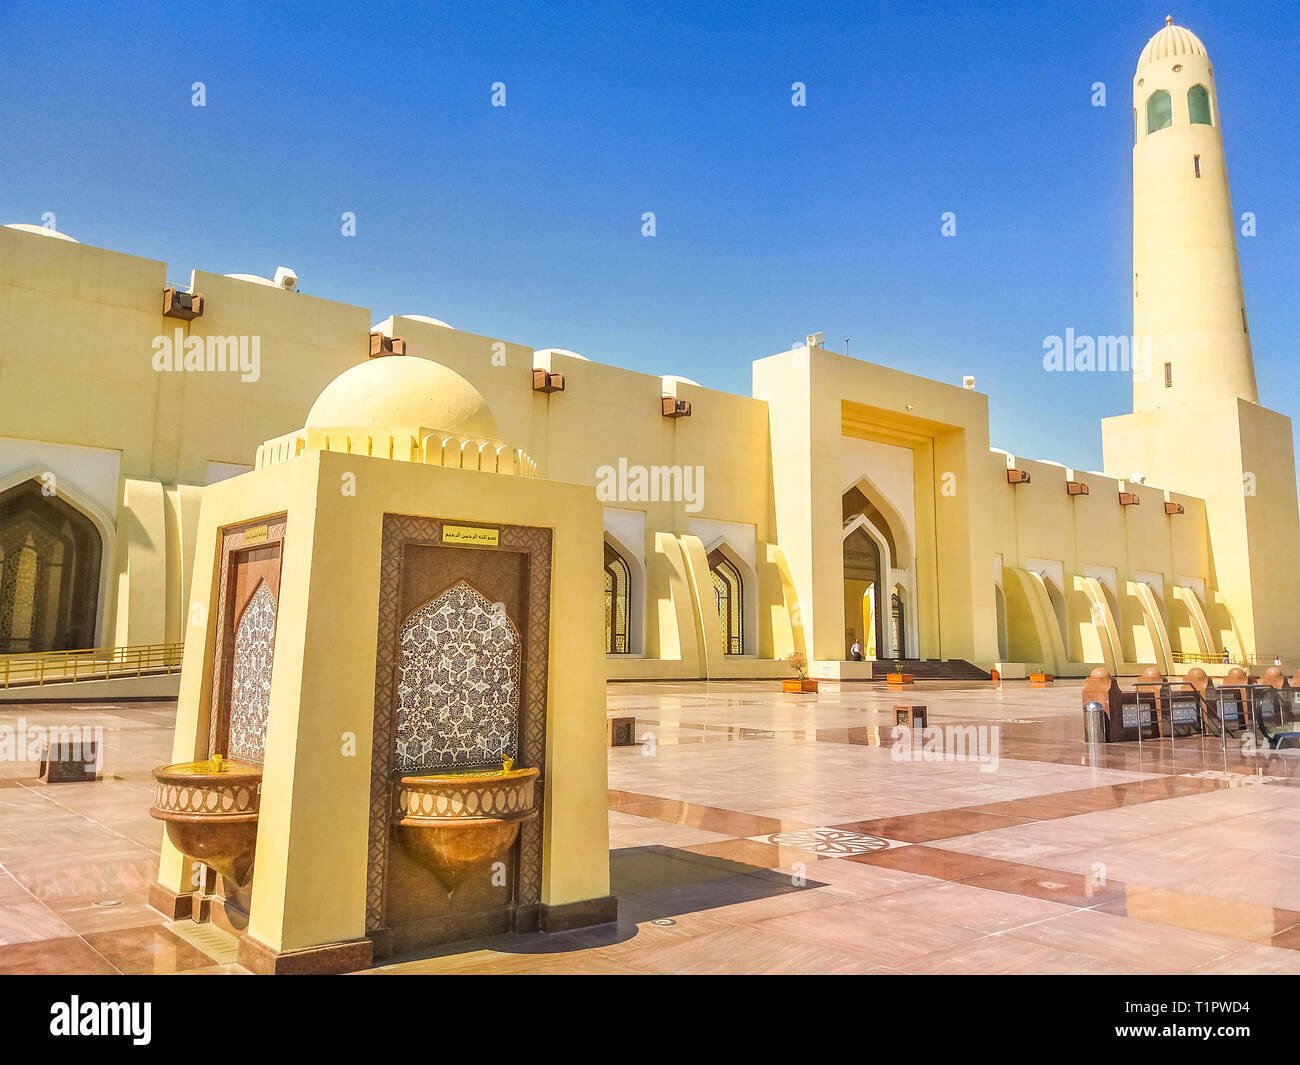 Doha, Katar - 21. Februar 2019: Brunnen im Freien der Großen Moschee mit Minarett auf einem suny Tag. Moschee in der Innenstadt von Doha, Katar, Mitte Stockfoto